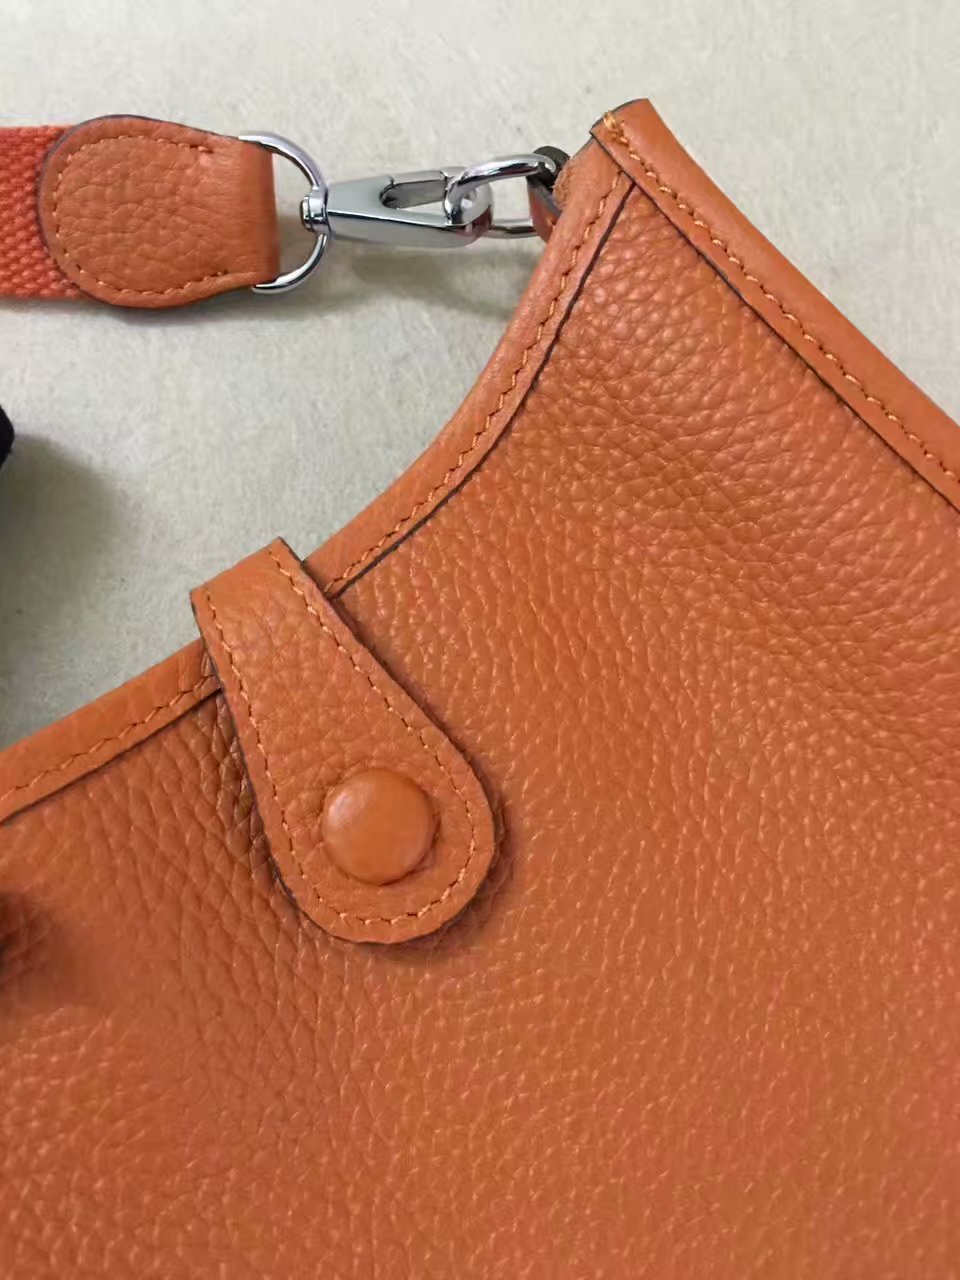 Hermes Evelyne original togo leather mini Shoulder Bag H15698 orange